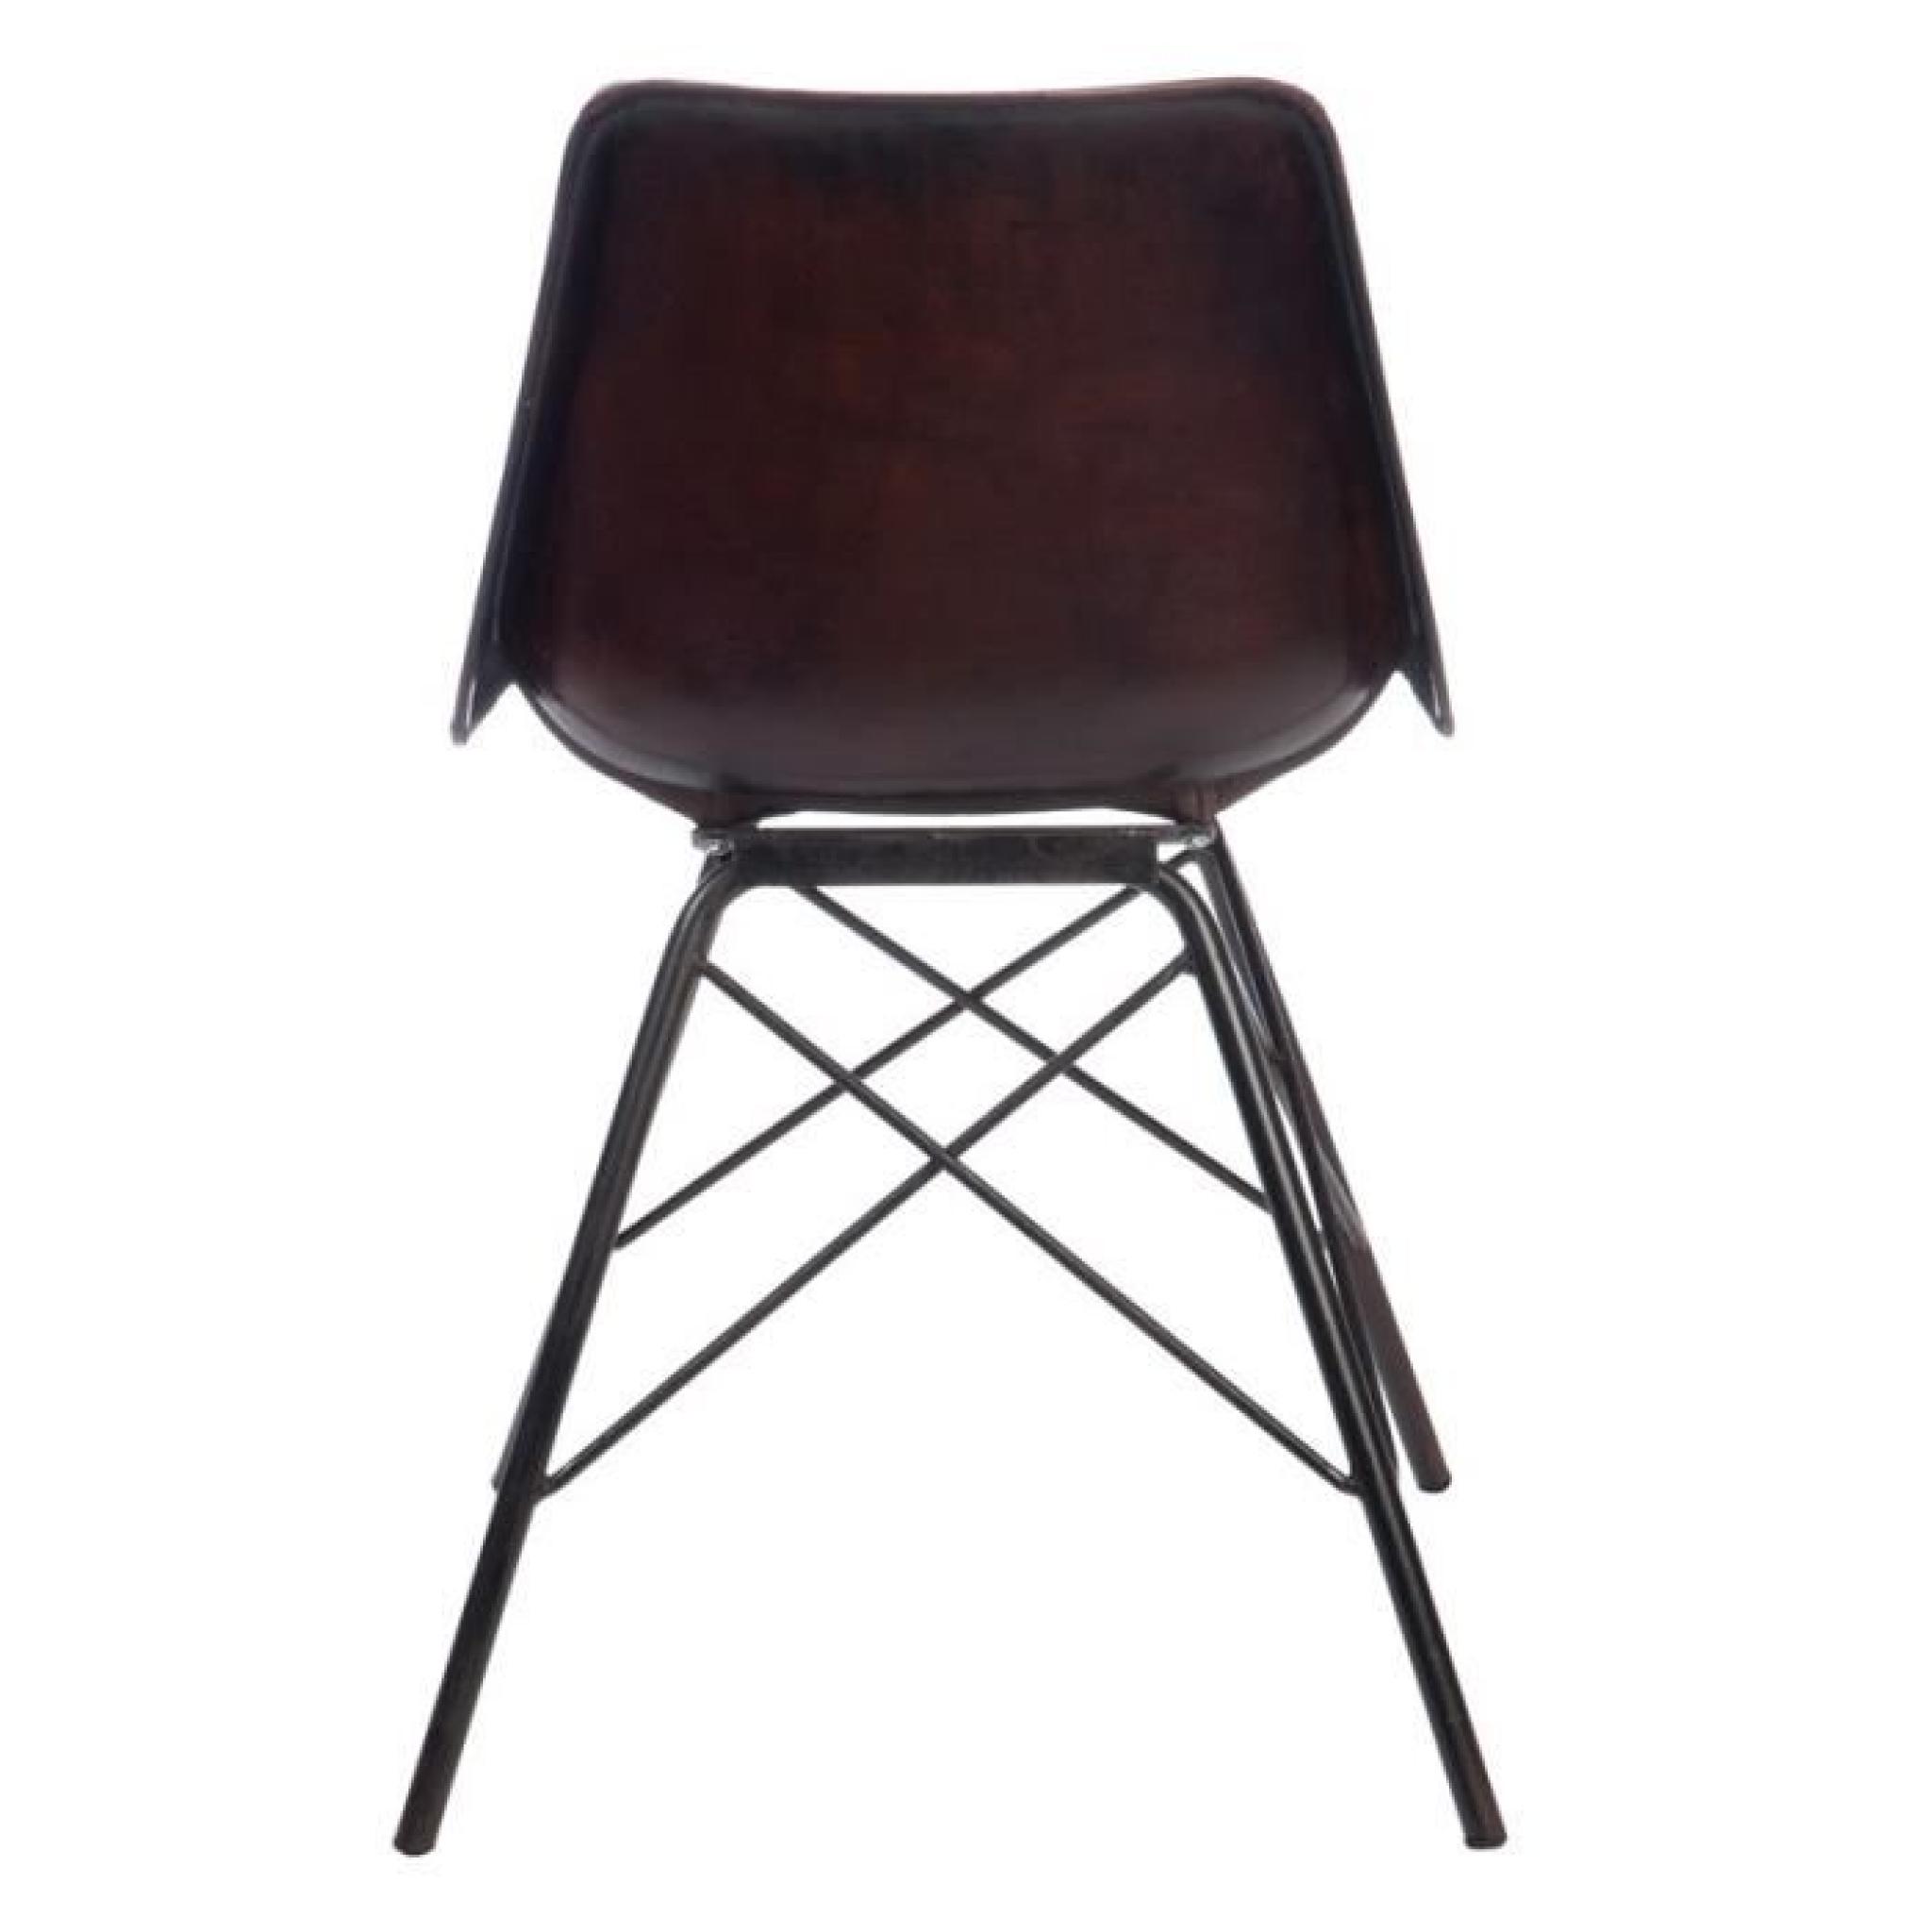 Duo de chaises Cuir Marron foncé - RYTA - L 51 x l 51 x H 79 cm pas cher